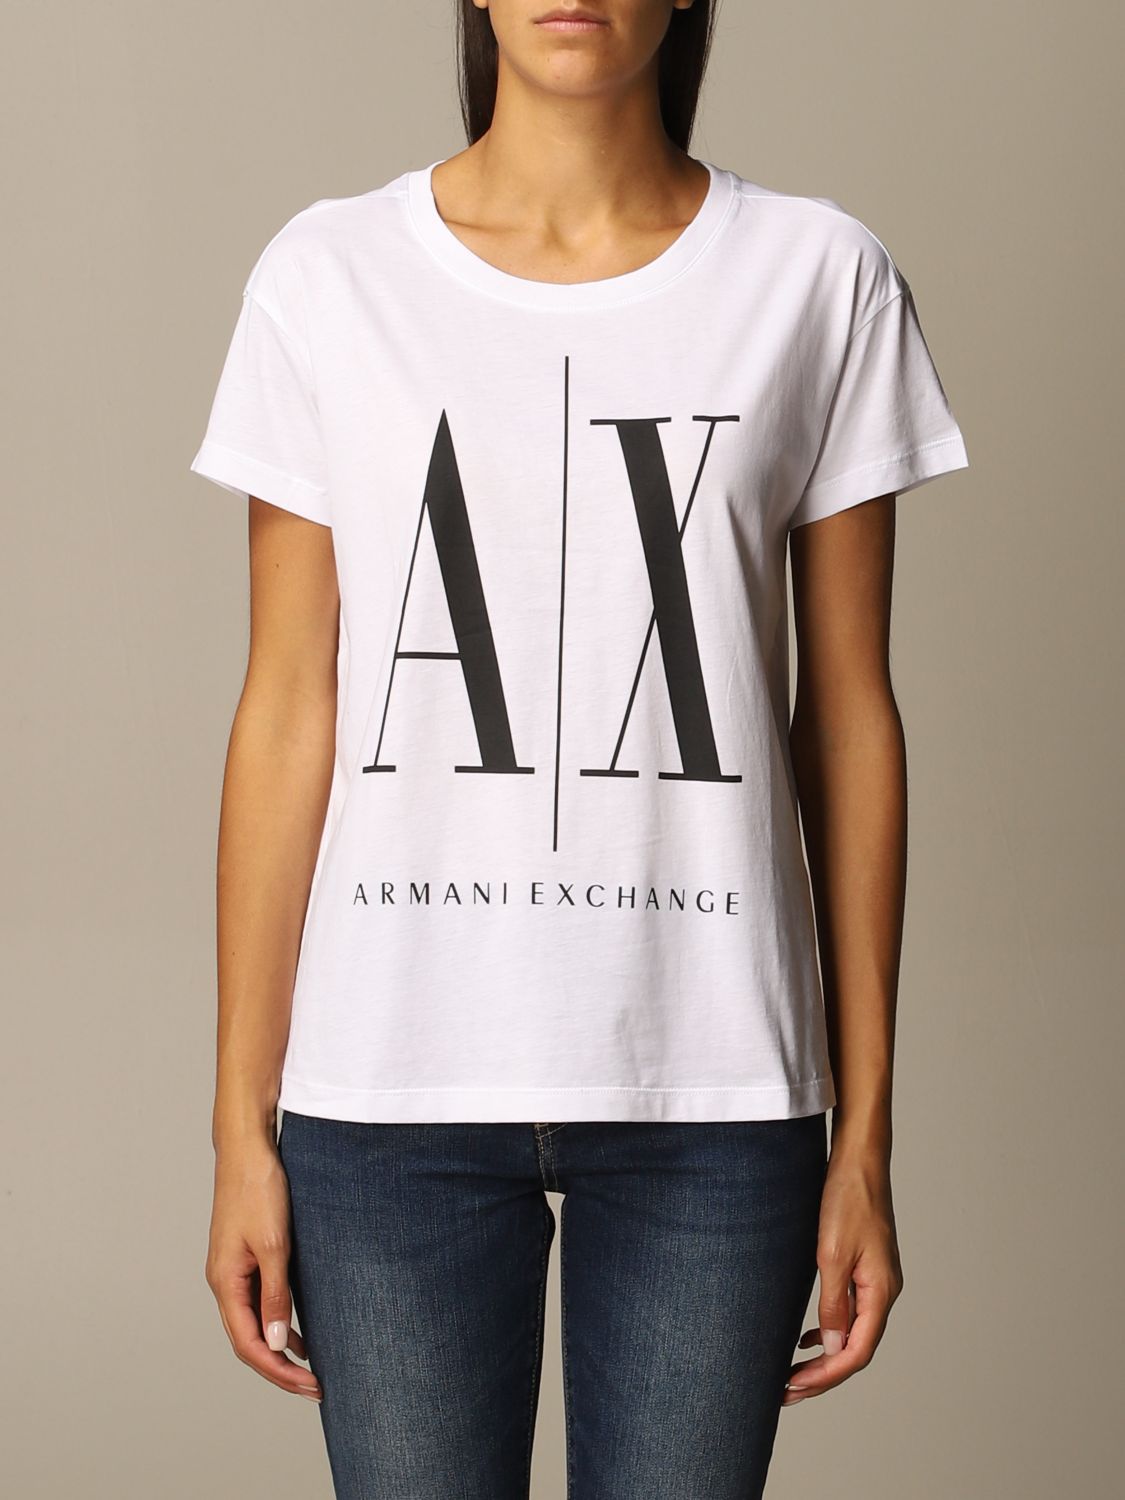 Armani Exchange Outlet: T-shirt women - White | T-Shirt Armani Exchange ...